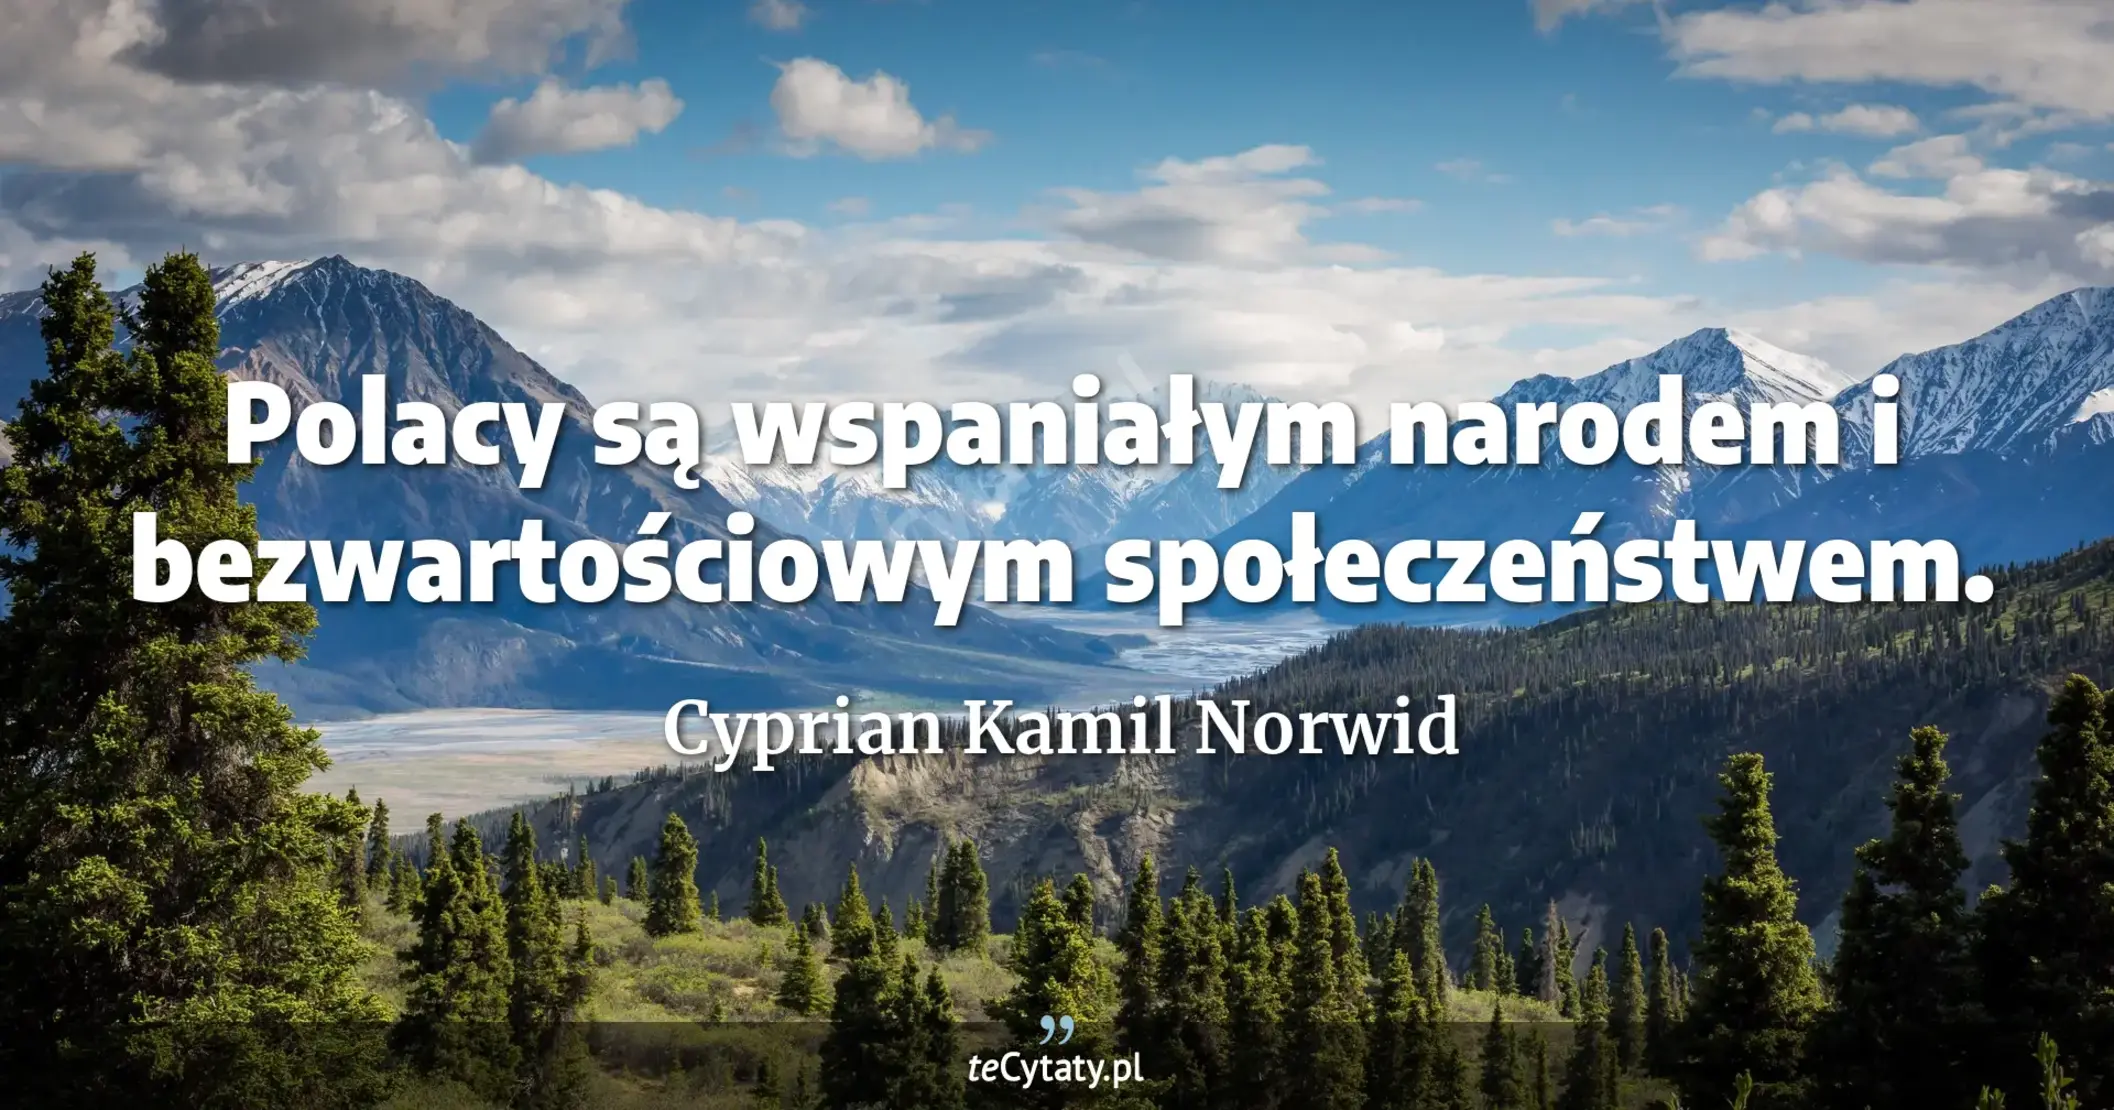 Polacy są wspaniałym narodem i bezwartościowym społeczeństwem. - Cyprian Kamil Norwid